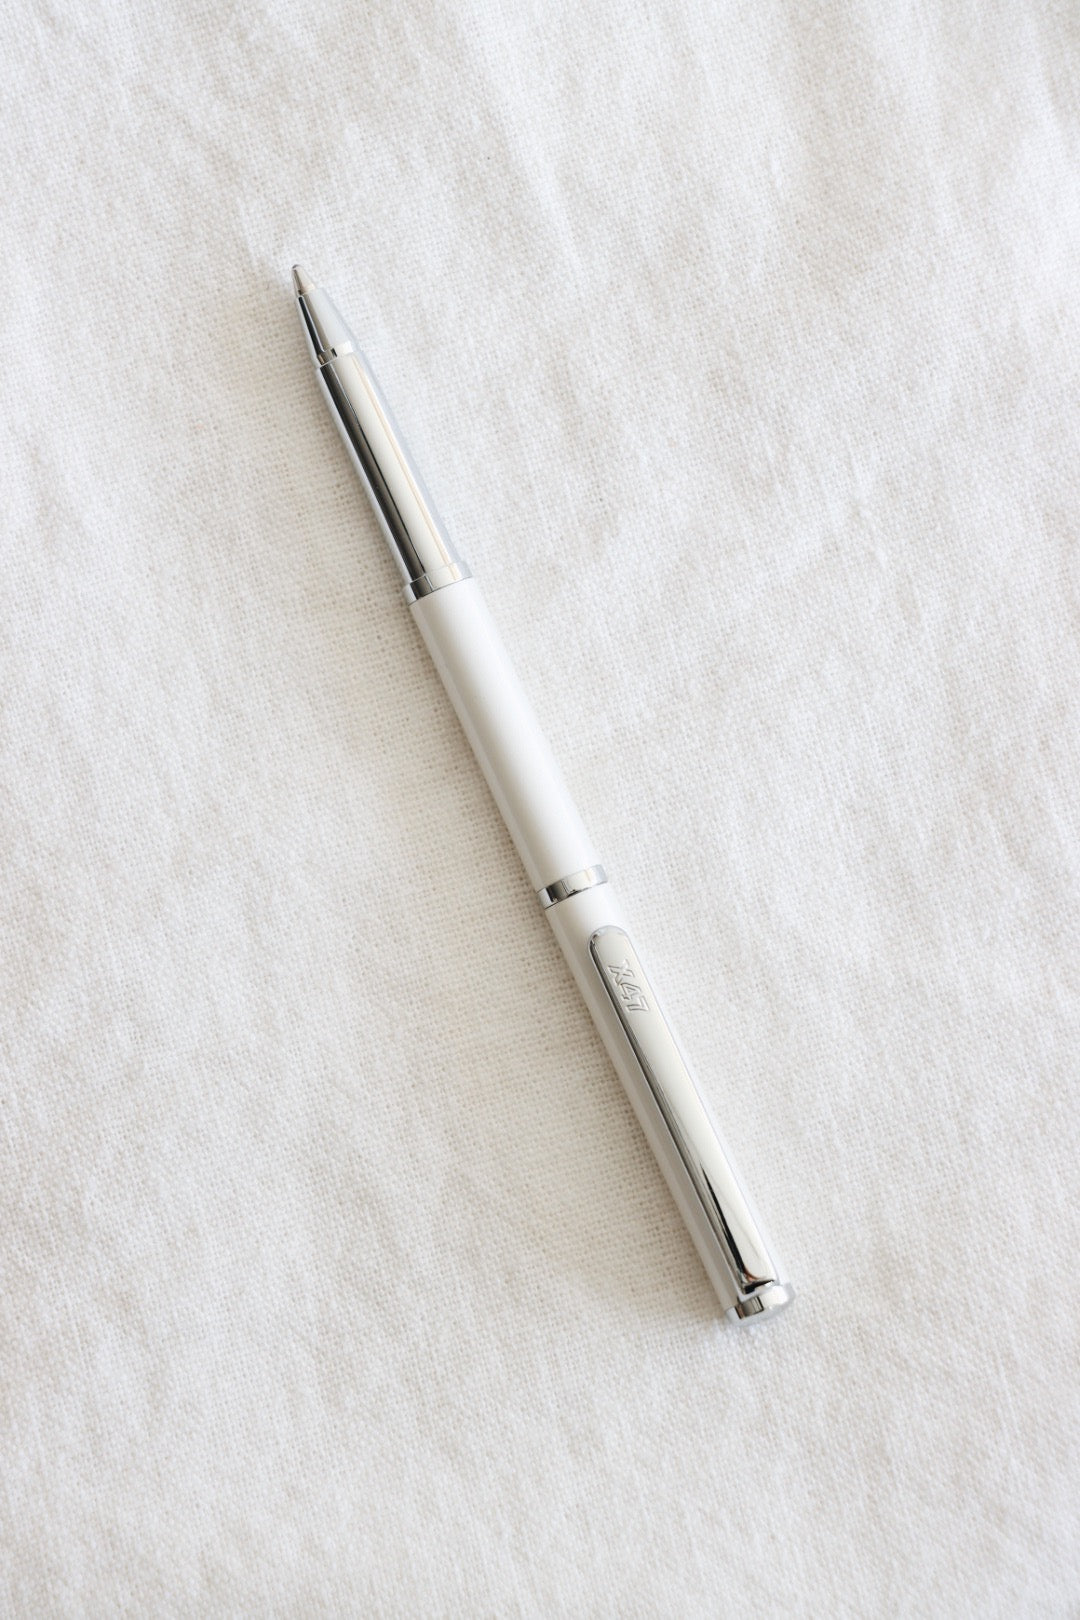 X47 Mini Ballpoint Pen, White